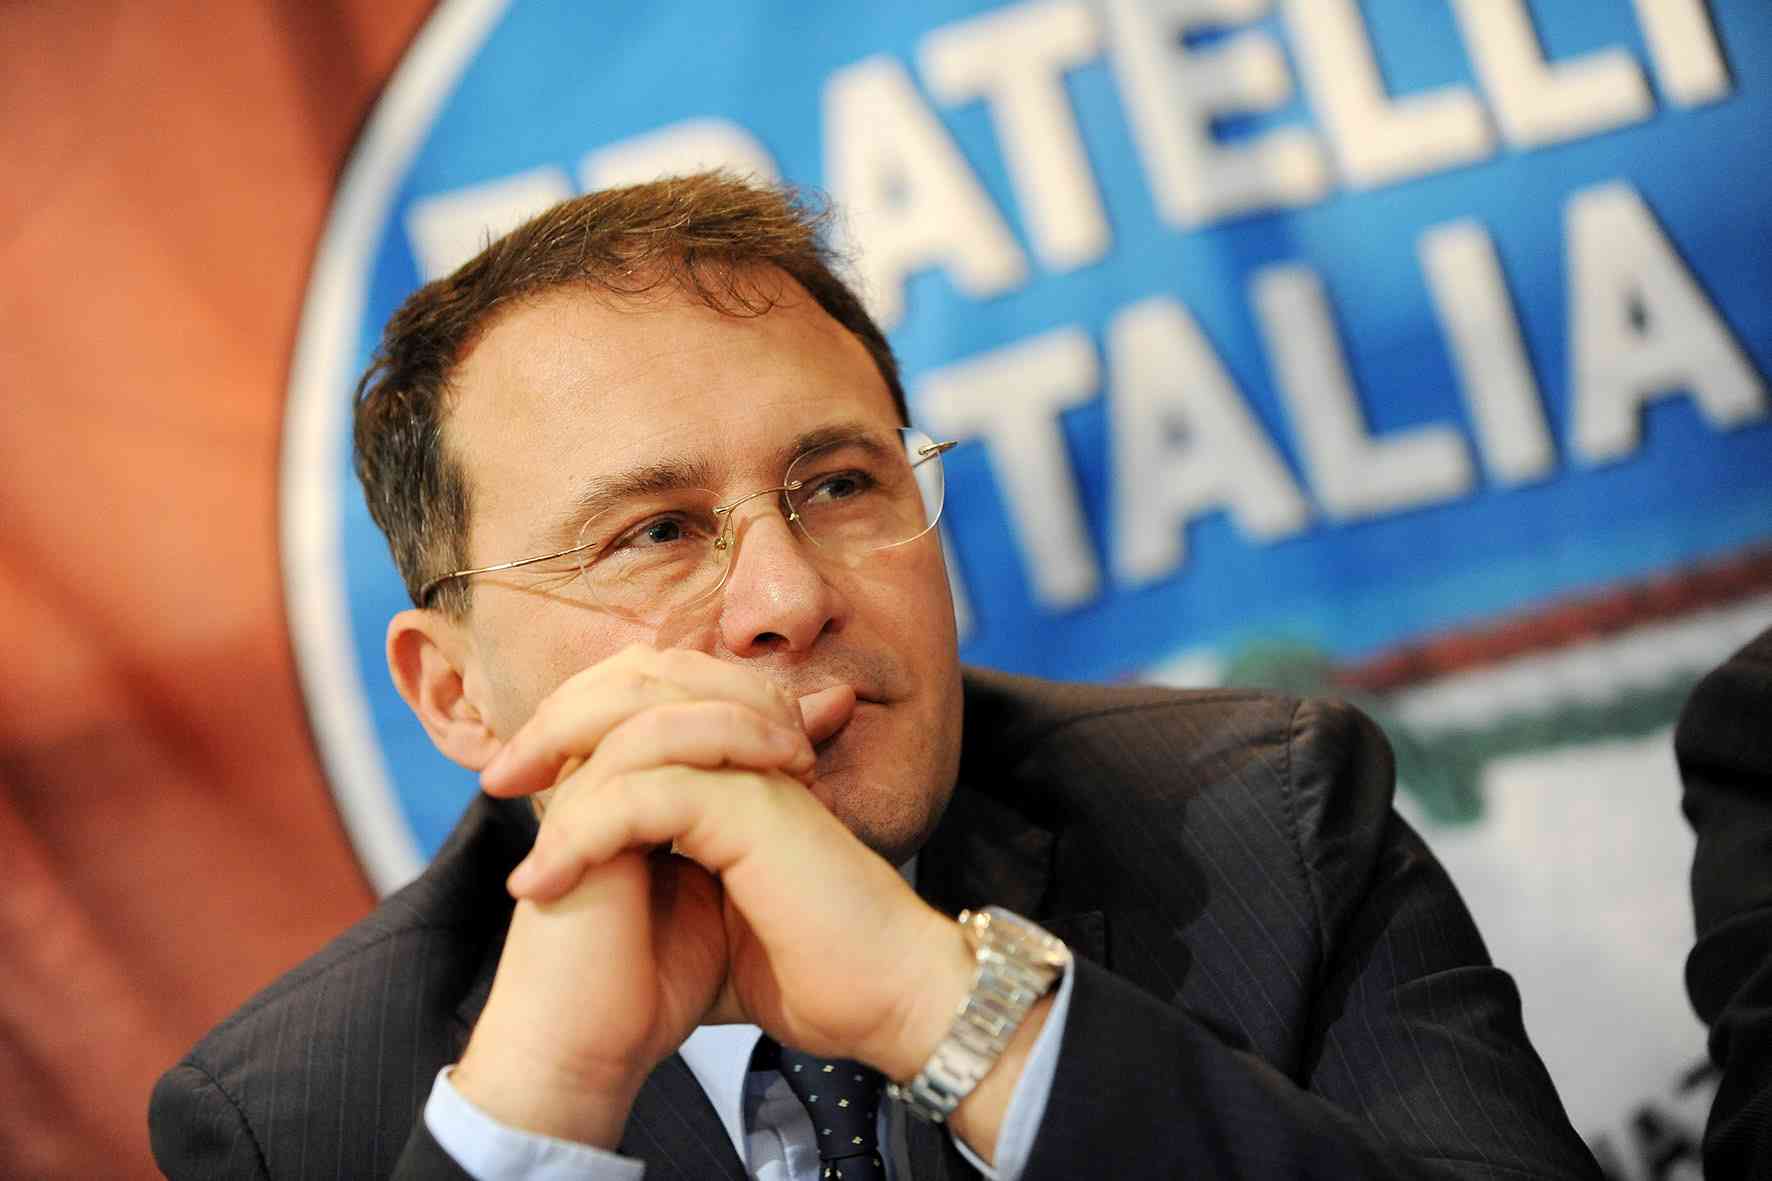 Campania: extracomunitari e sicurezza, on. Cirielli “Governo e Regione fanno orecchie da mercante, Lamorgese sparita?”